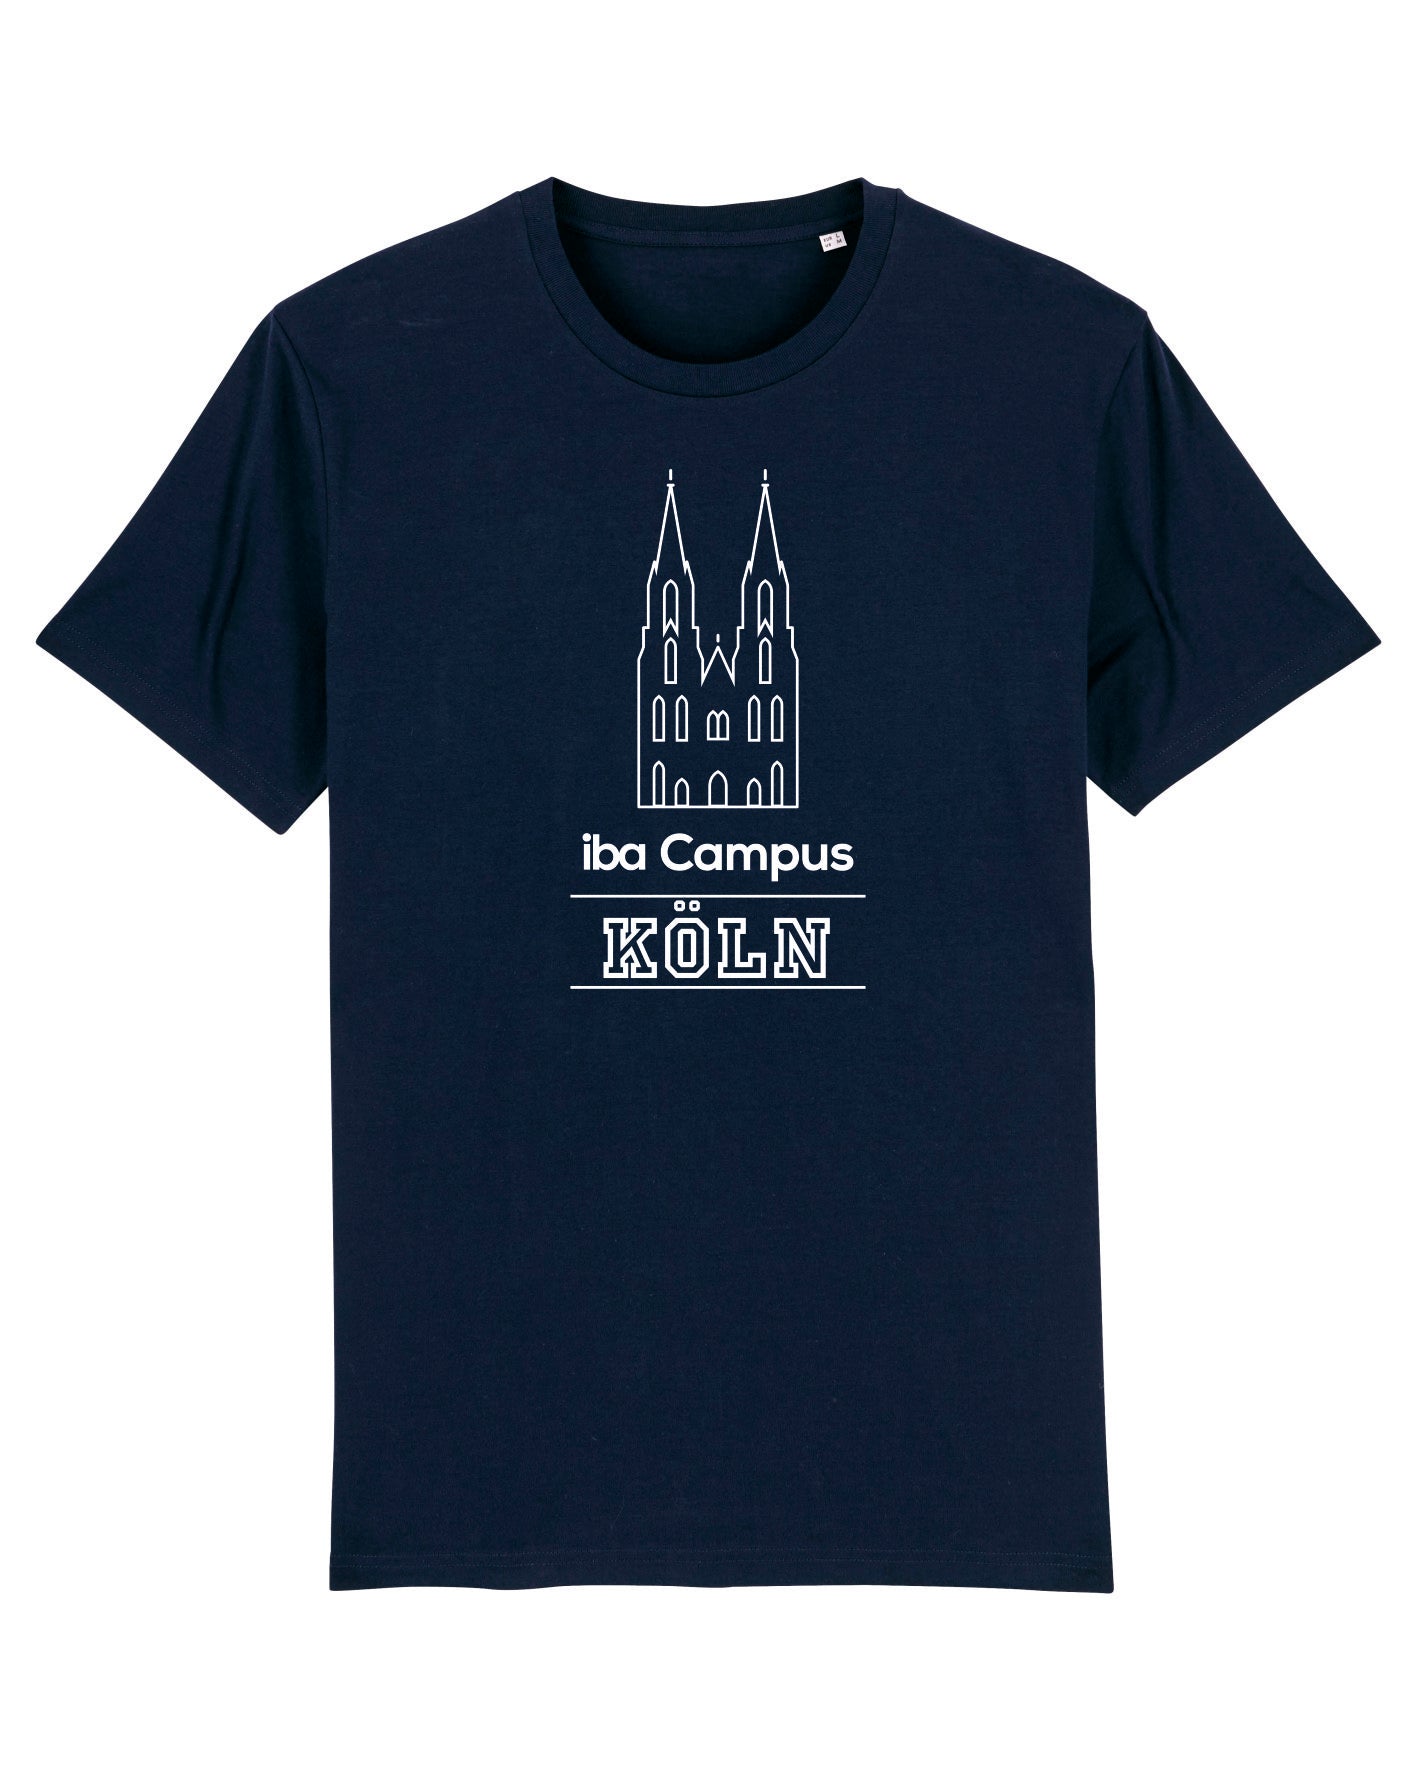 Herren T-Shirt iba | Campus Köln